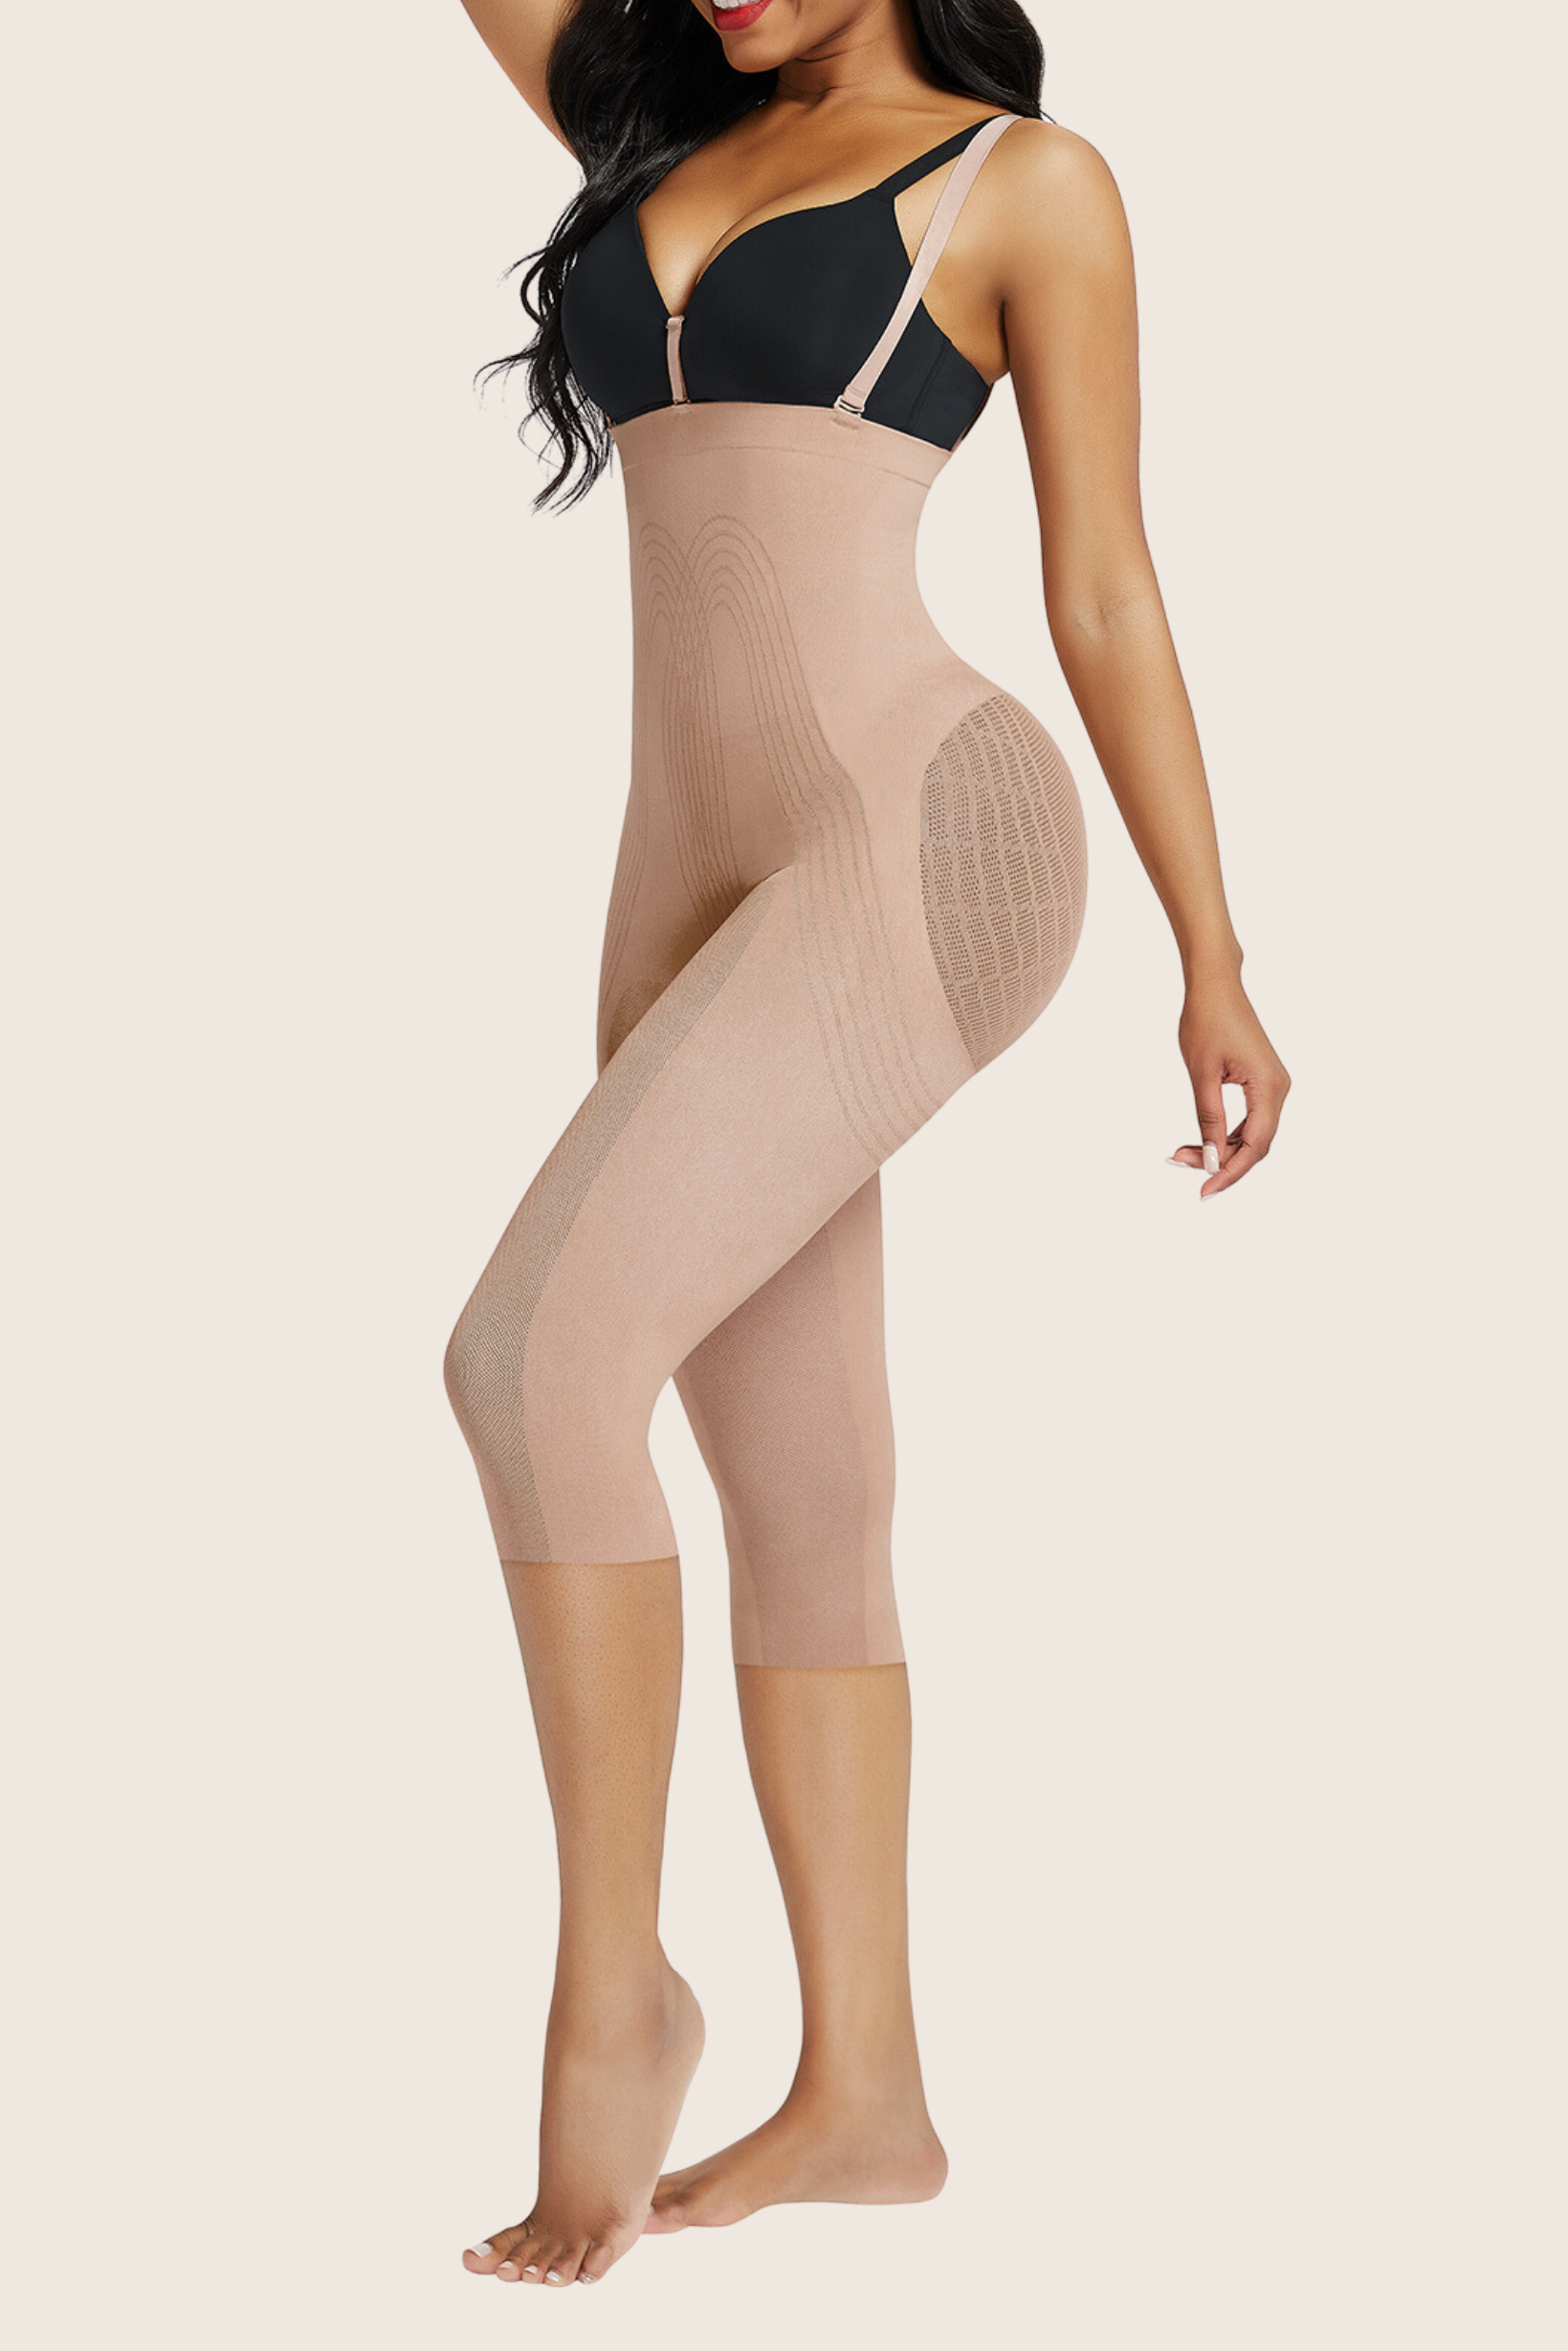 Detachable Body Shaper Leggings - Women's Shapewear - Modelle – MODELLE